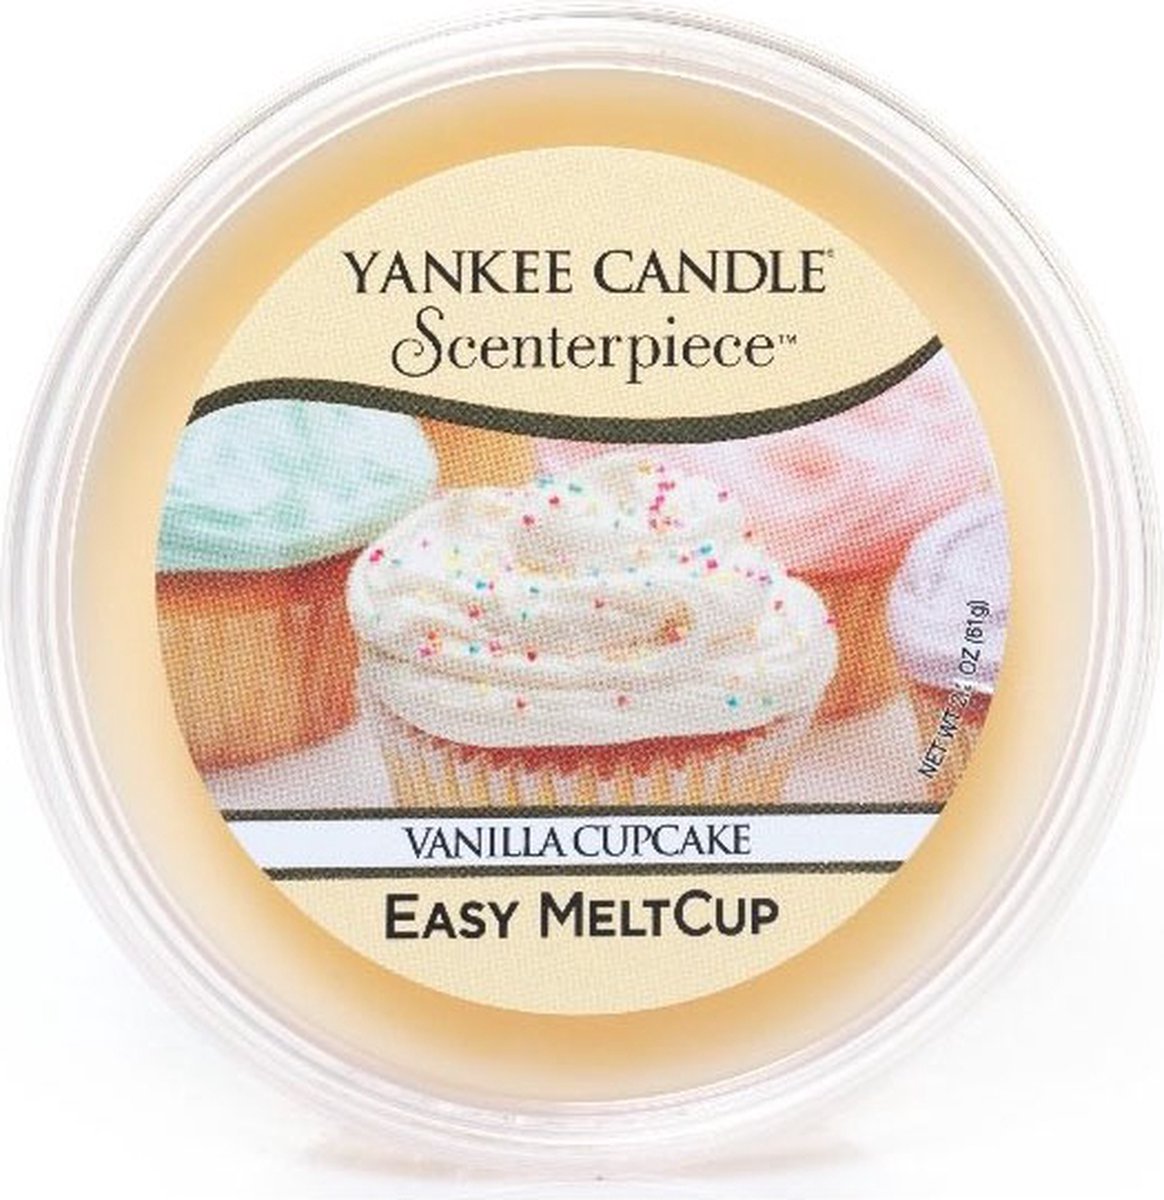 Yankee Candle - Vanilla Cupcake Scenterpiece Easy MeltCup ( vanilkový košíček ) - Vonný vosk do aromalampy - 61.0g